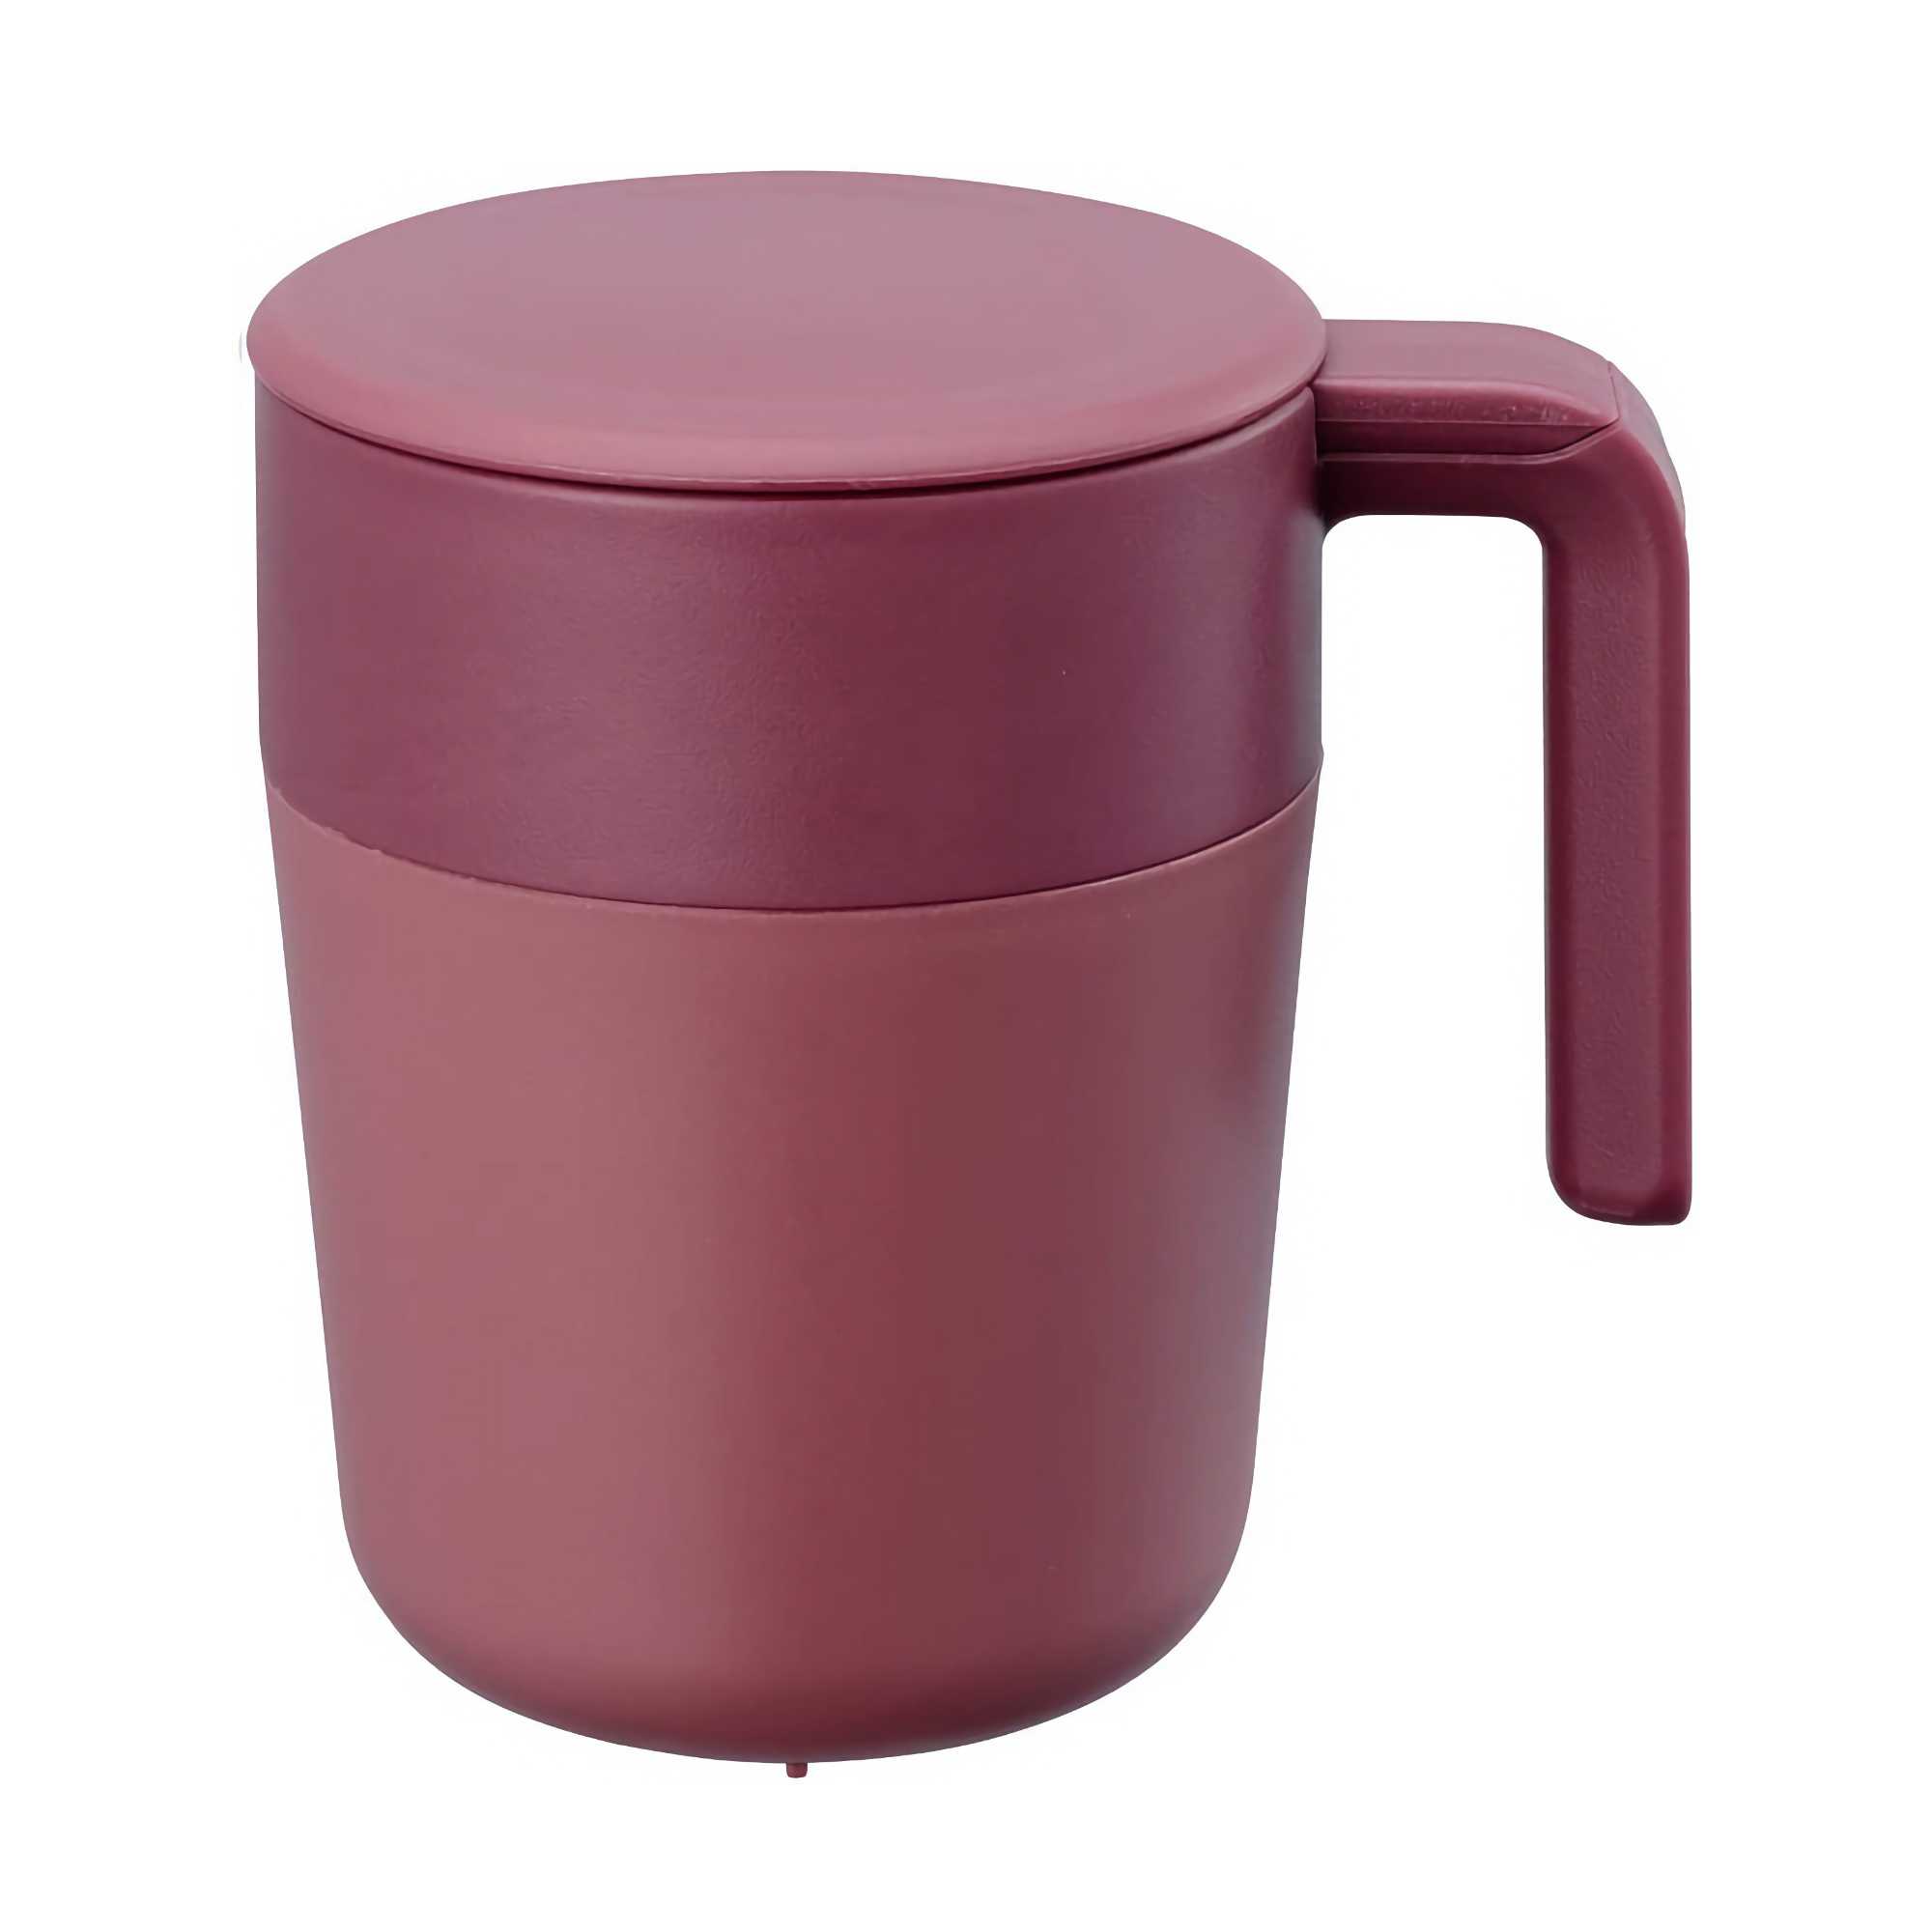 Kinto Cafepress Mug, Wine Red (260ml)